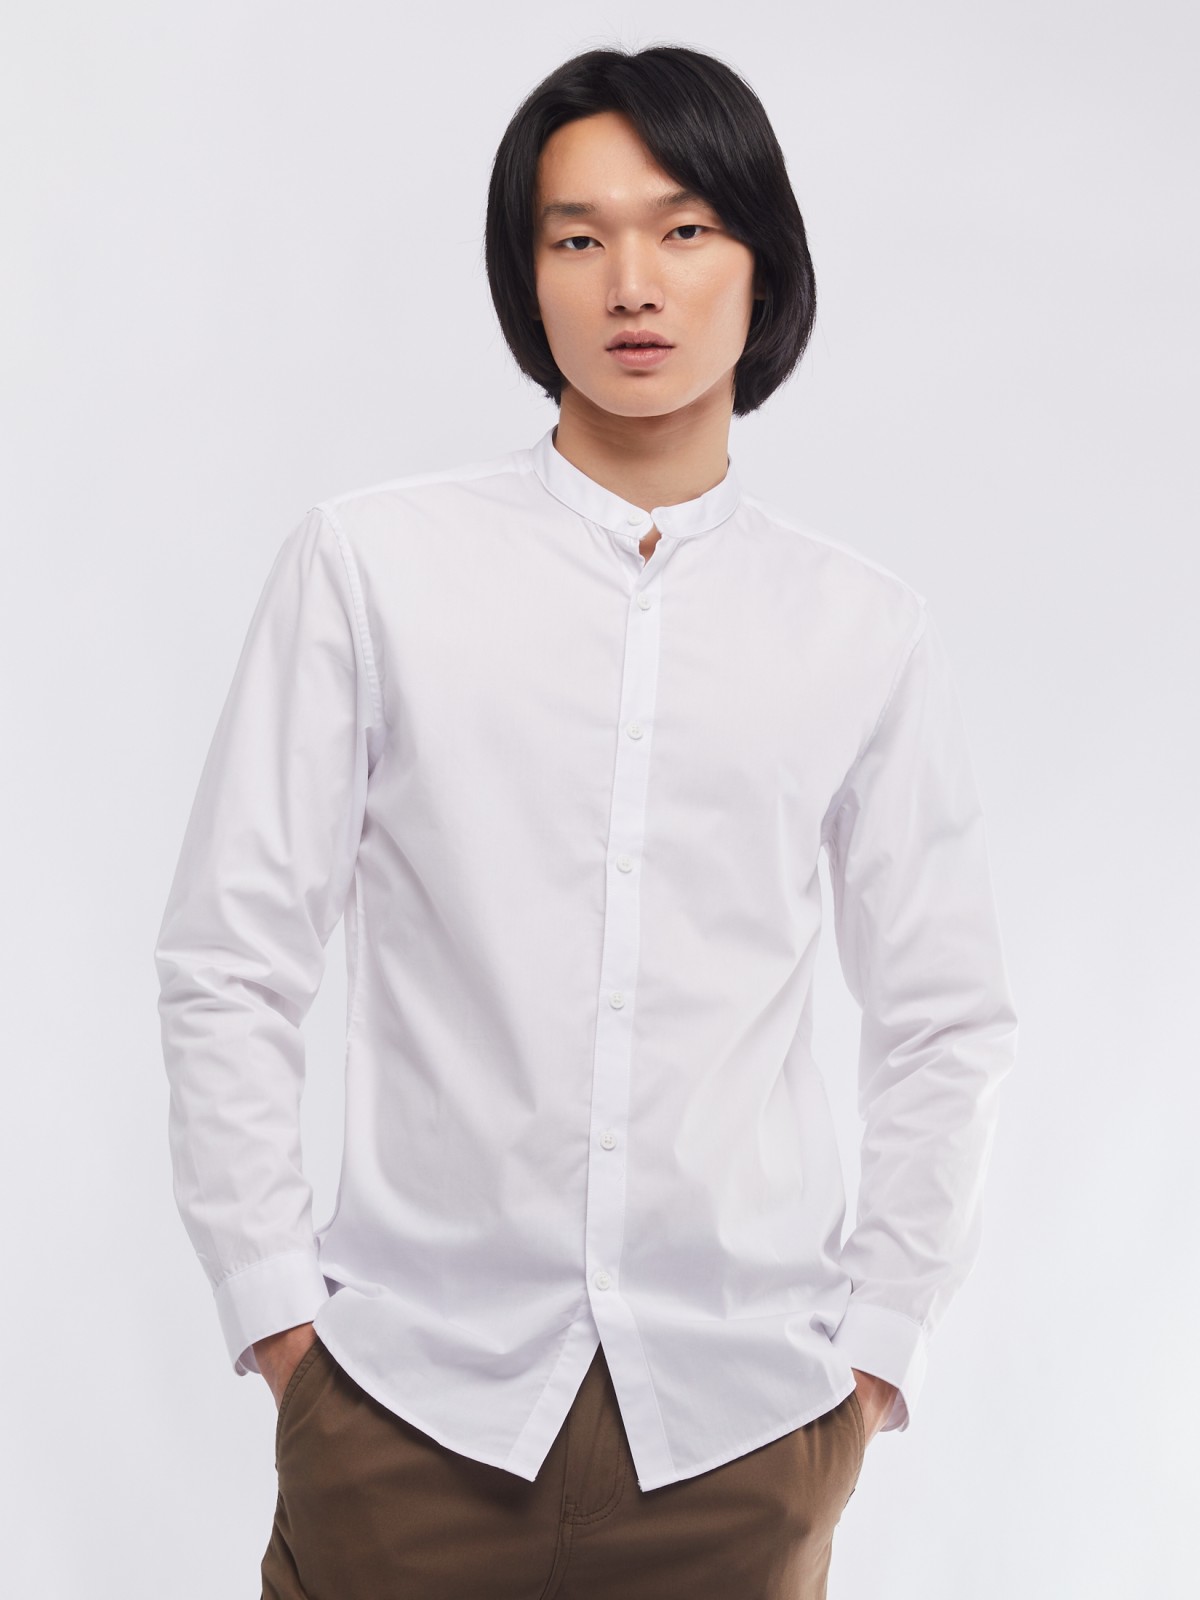 Офисная рубашка с воротником-стойкой и длинным рукавом zolla 01411217W072, цвет белый, размер M - фото 3